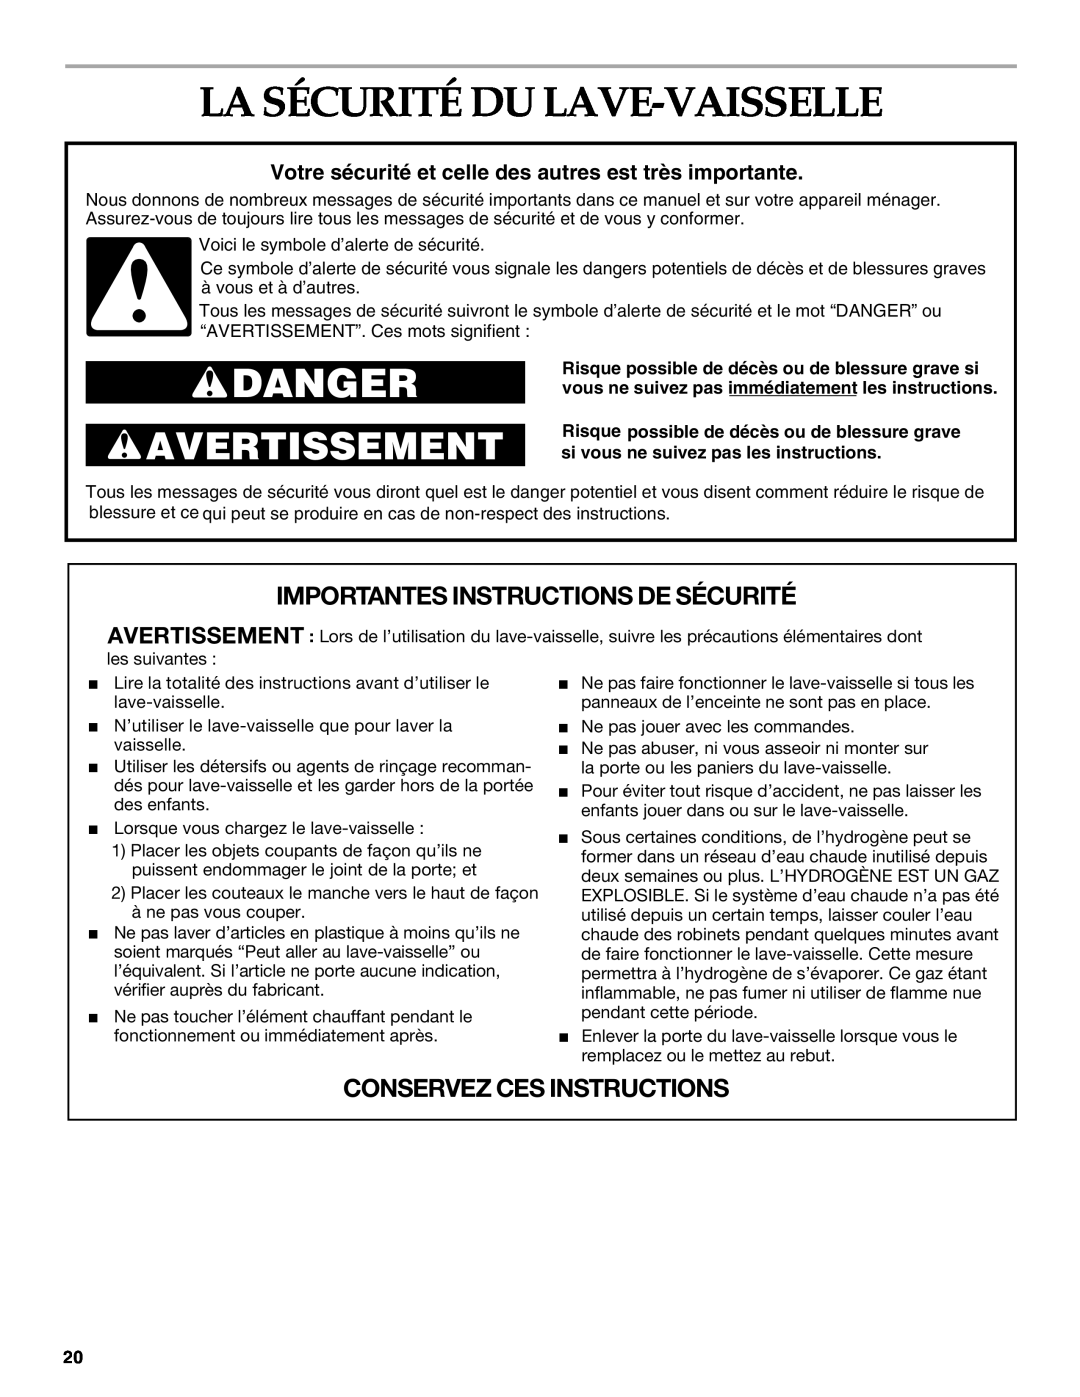 KitchenAid KUDR01TJ manual La Sécurité Du Lave-Vaisselle, Importantes Instructions De Sécurité, Conservez Ces Instructions 